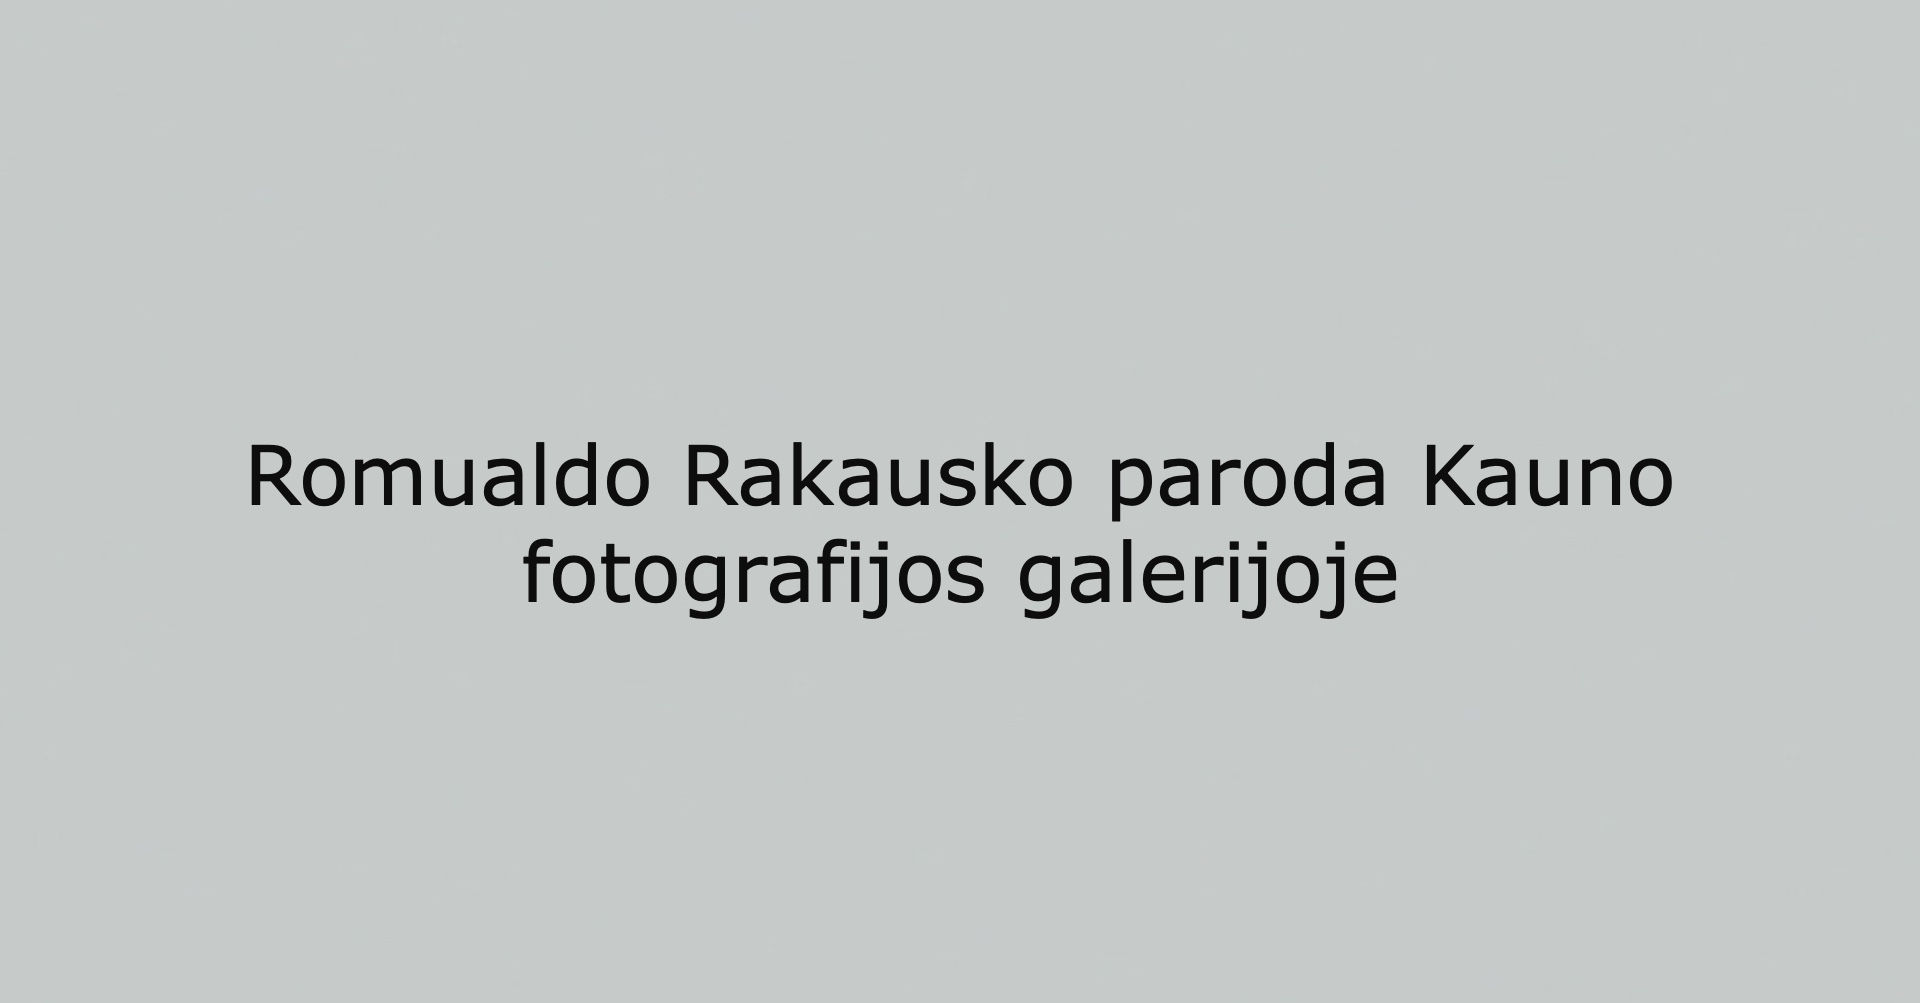 Romualdo Rakausko paroda Kauno fotografijos galerijoje